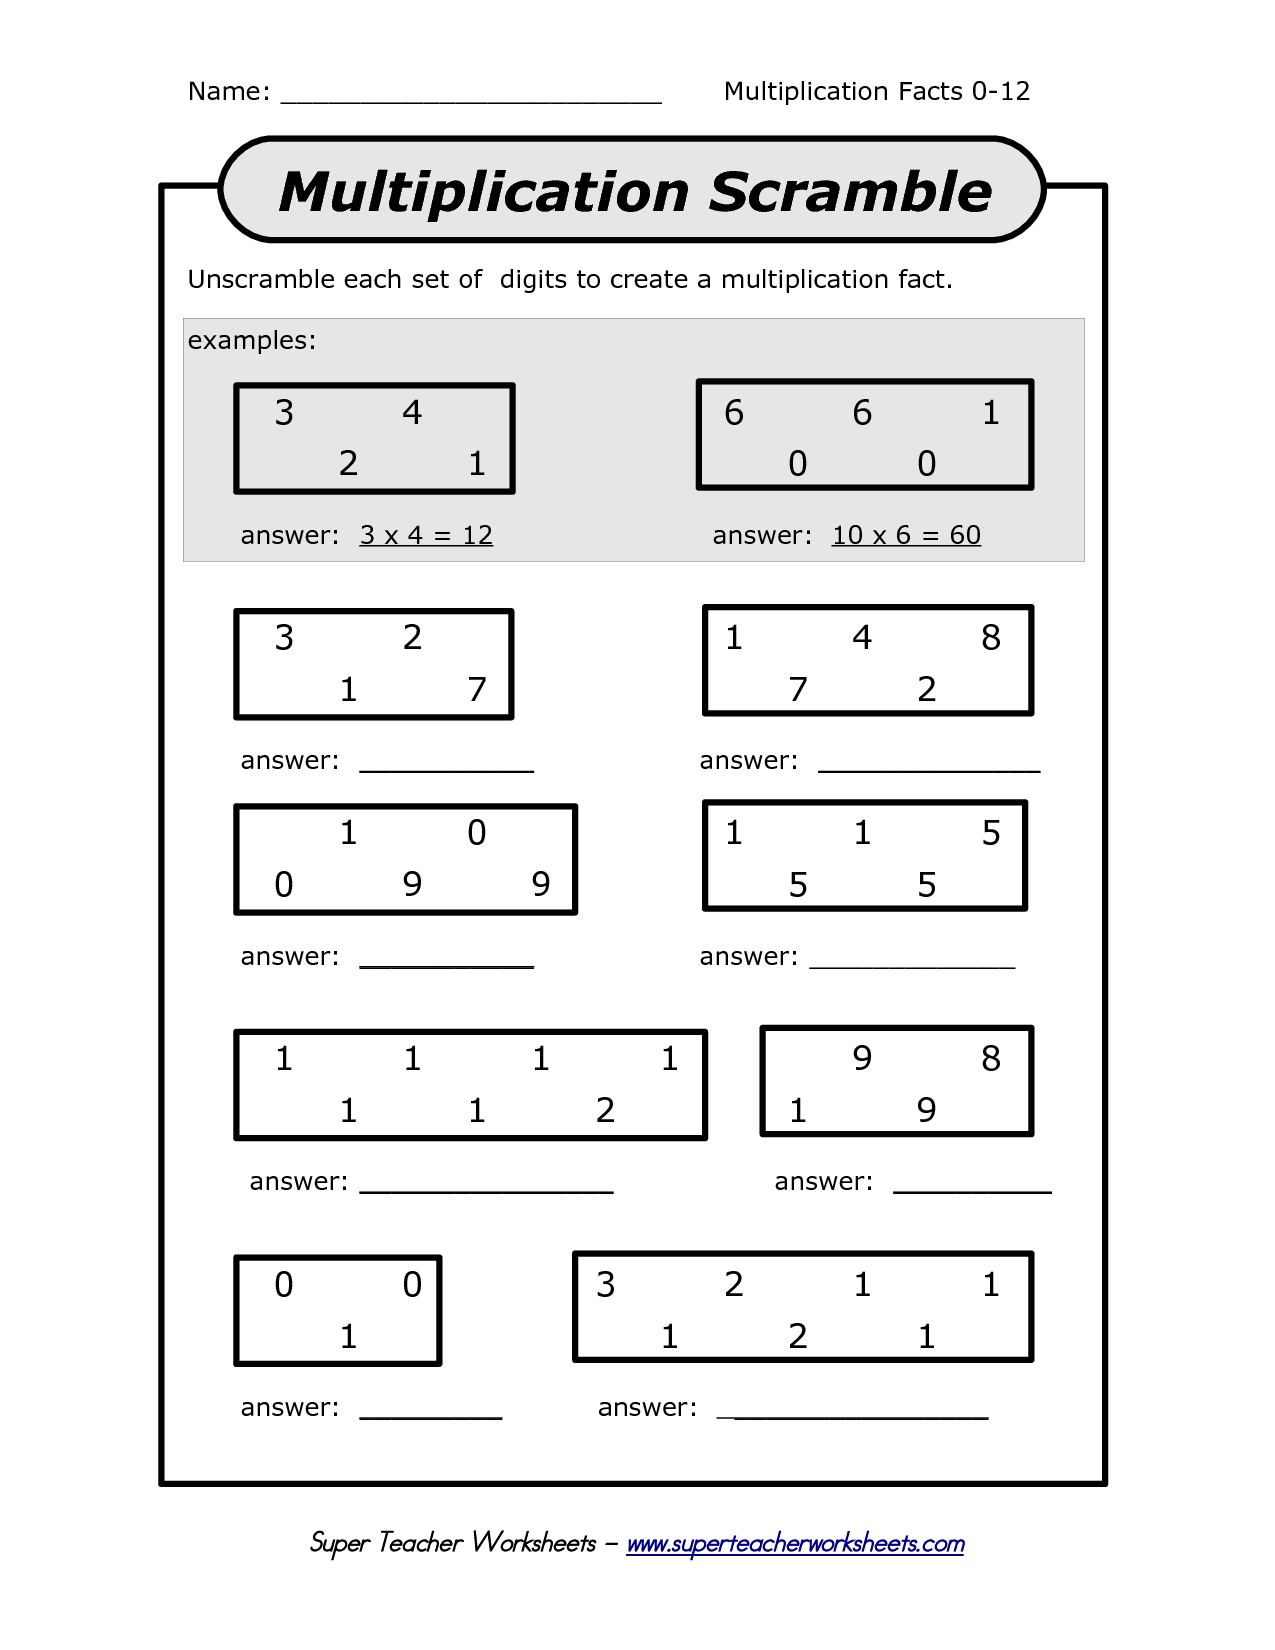 multiplication-worksheets-super-teacher-printable-worksheets